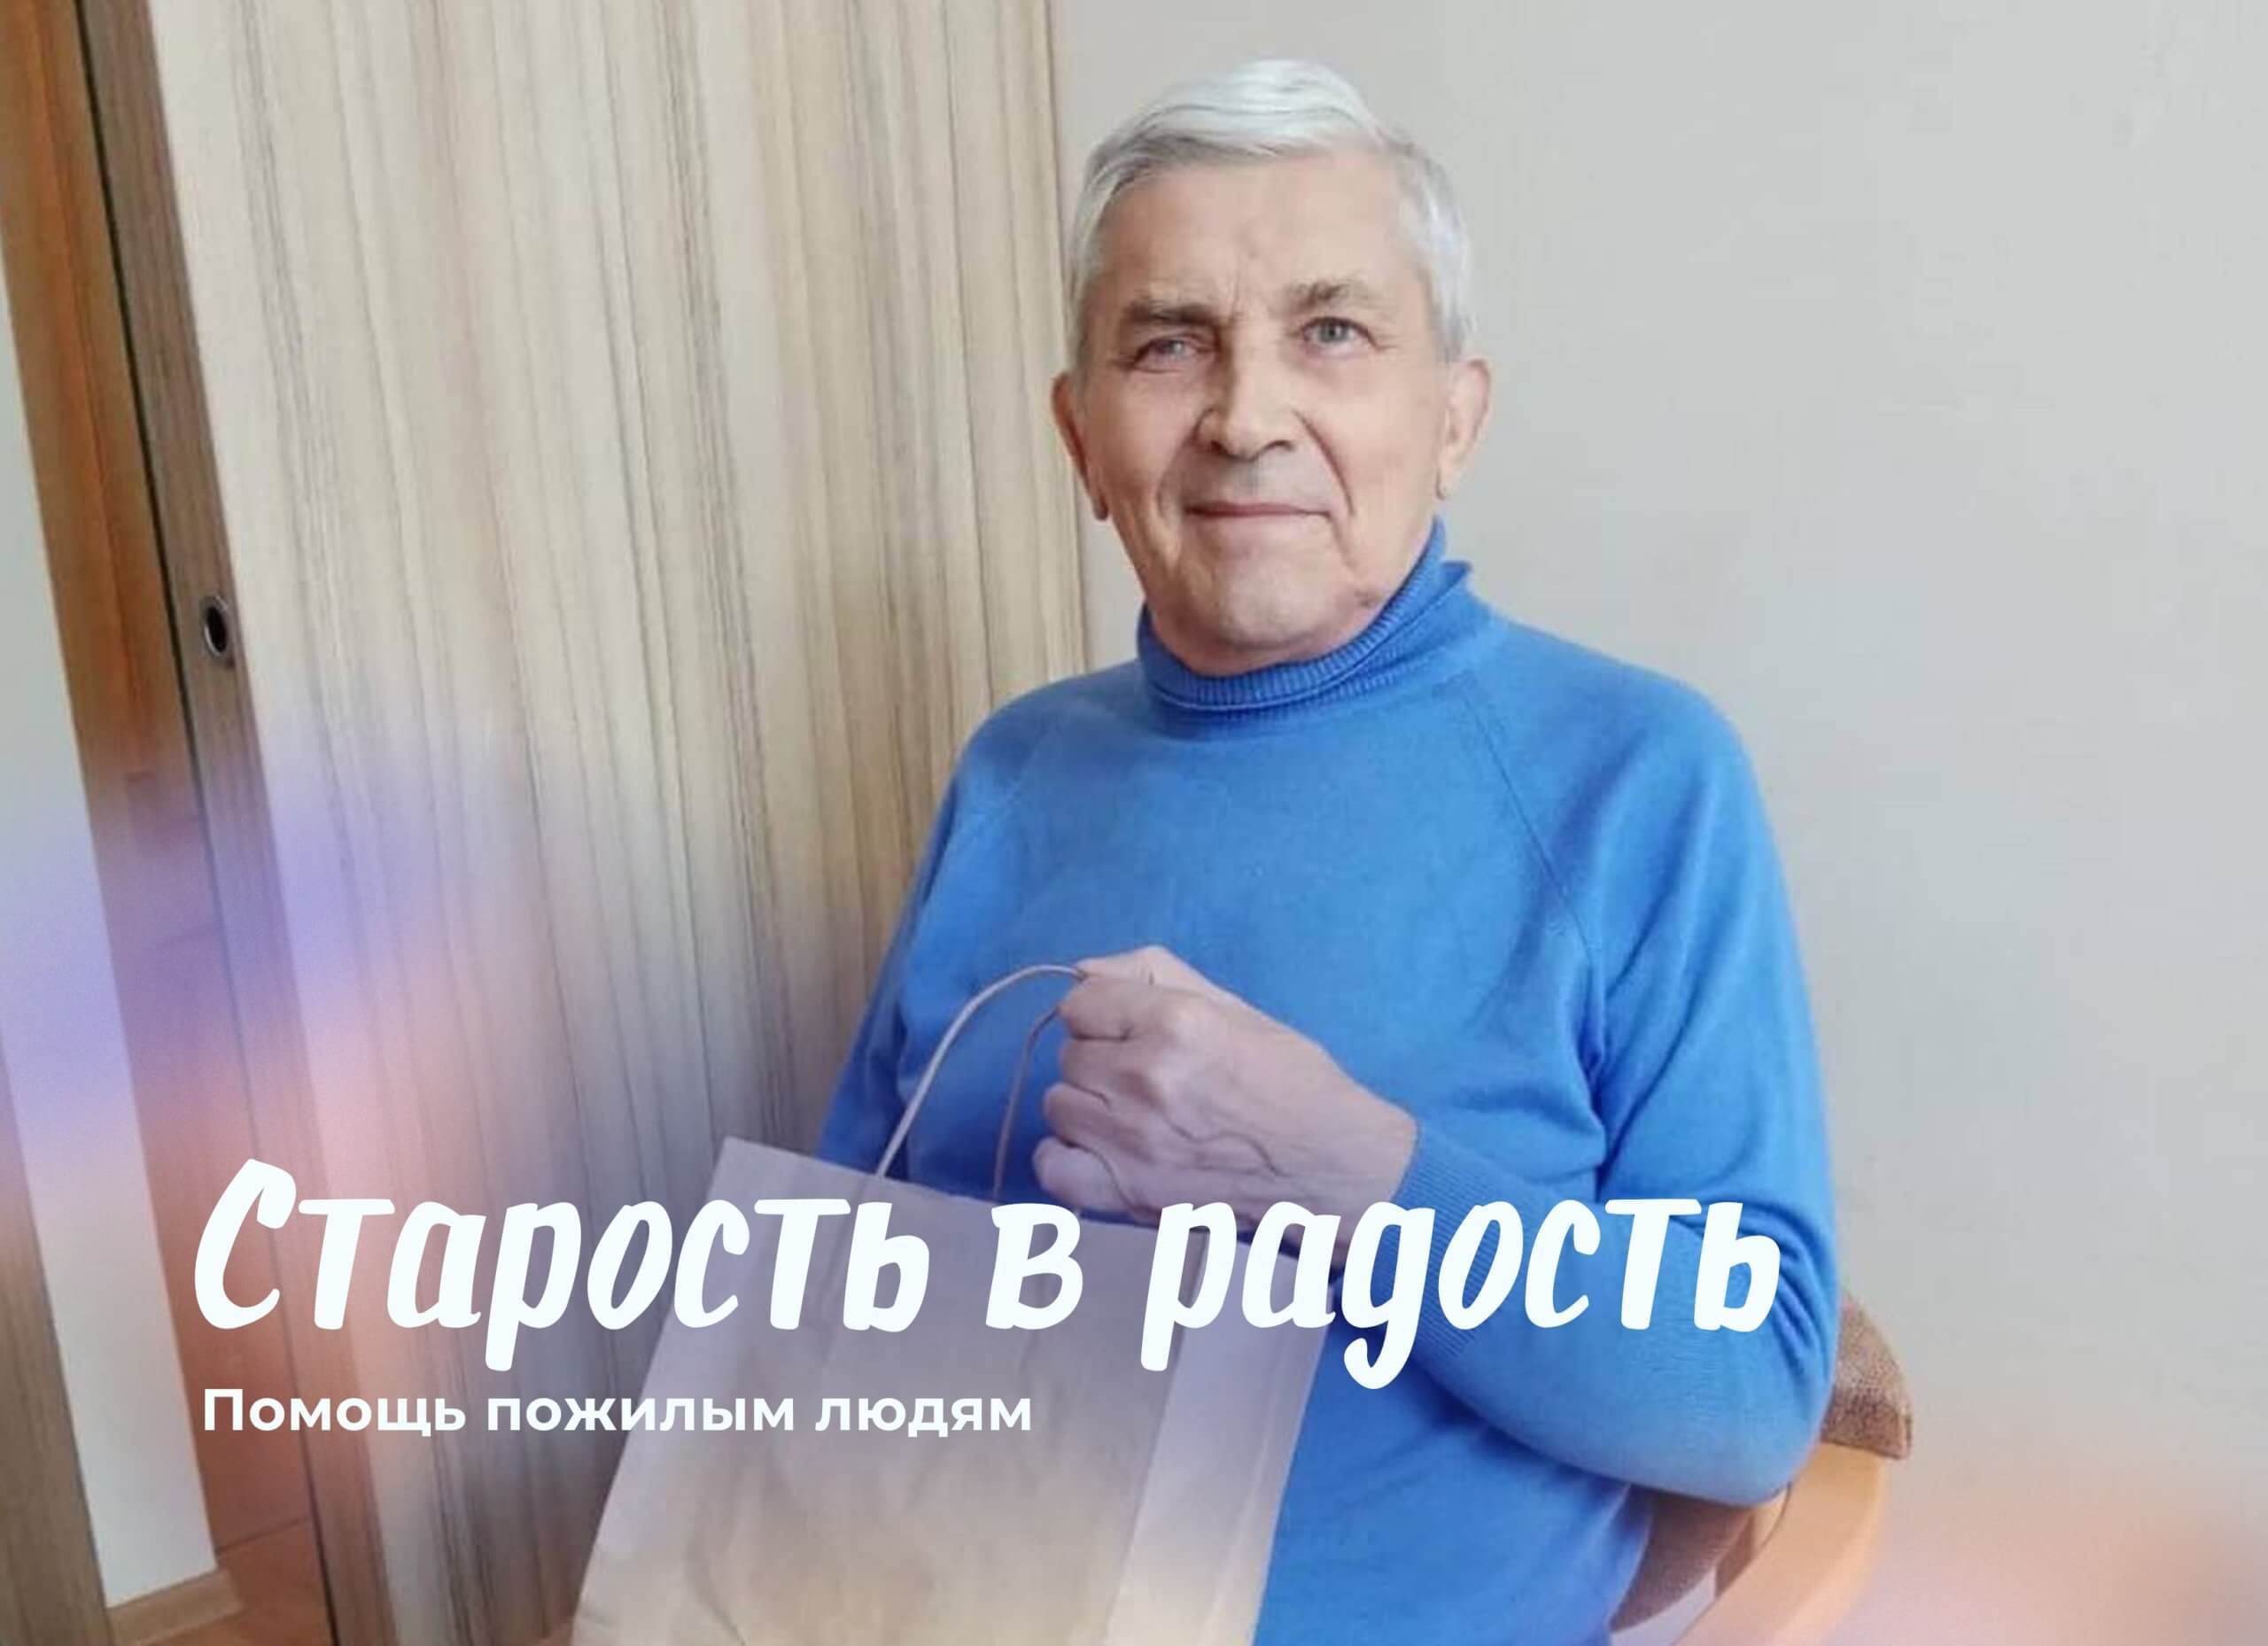 Ирина Фурсова: Помочь пожилым больным людям может каждый из нас